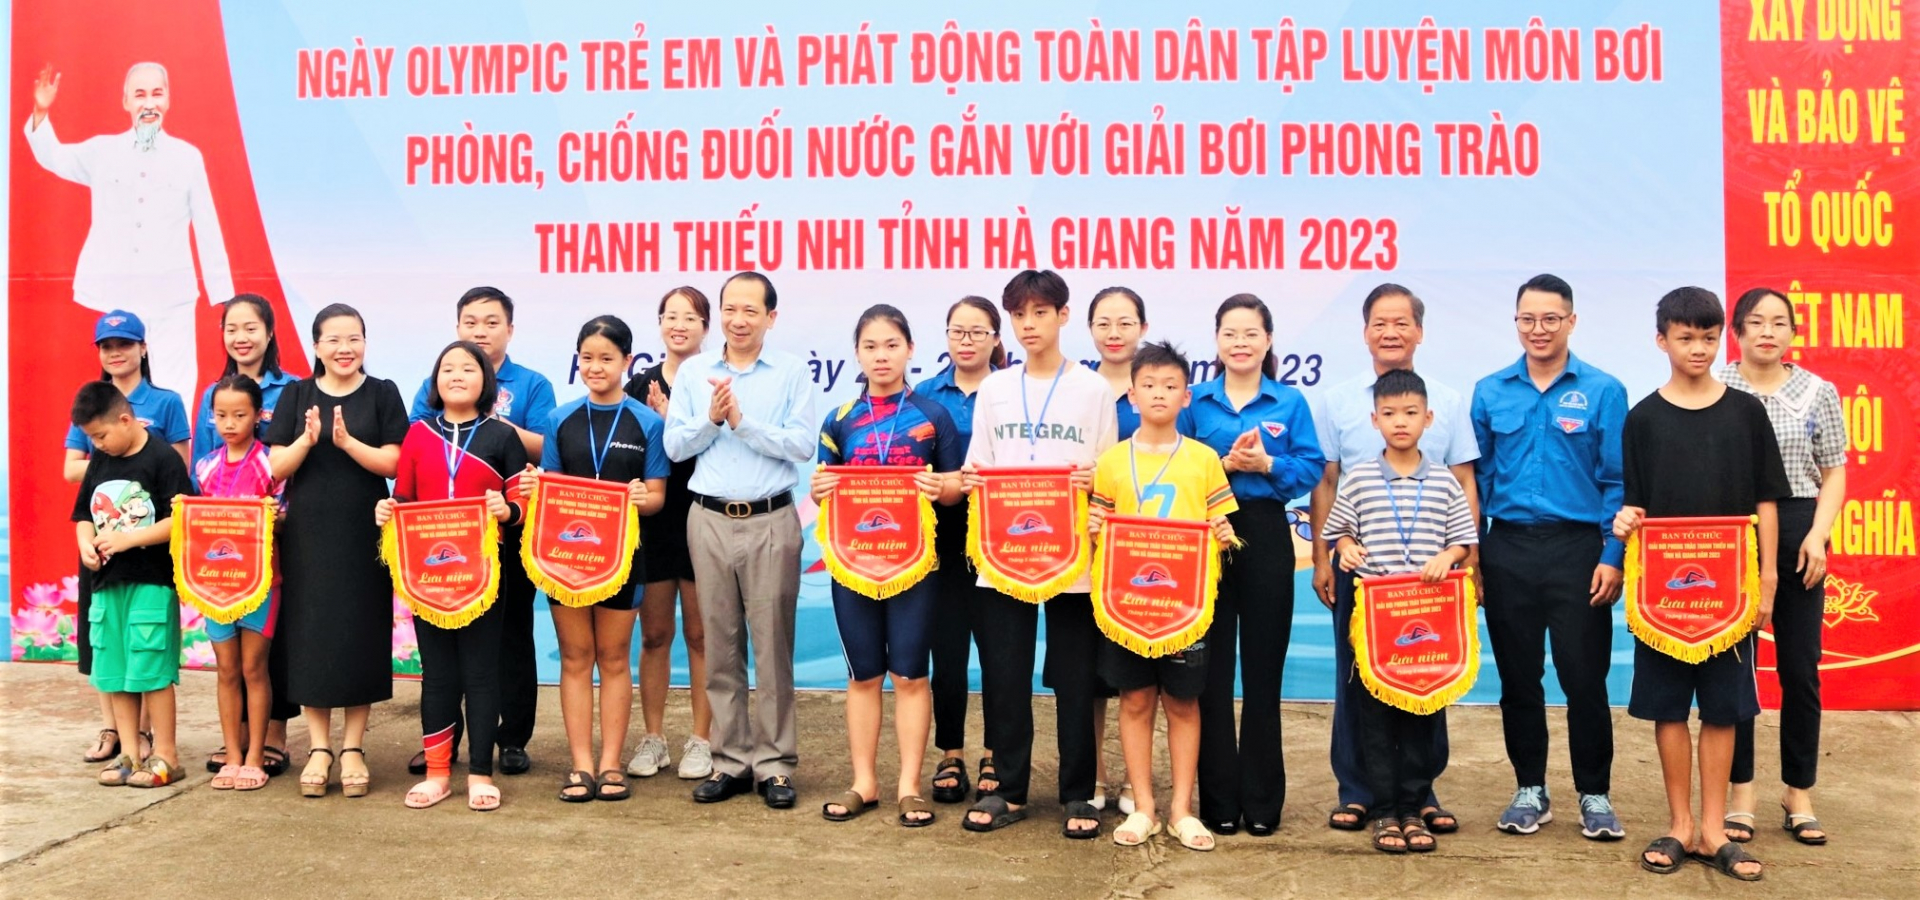 Đồng chí Trần Đức Quý, Phó Chủ tịch UBND tỉnh trao cờ lưu niệm cho các đội tham gia thi đấu.